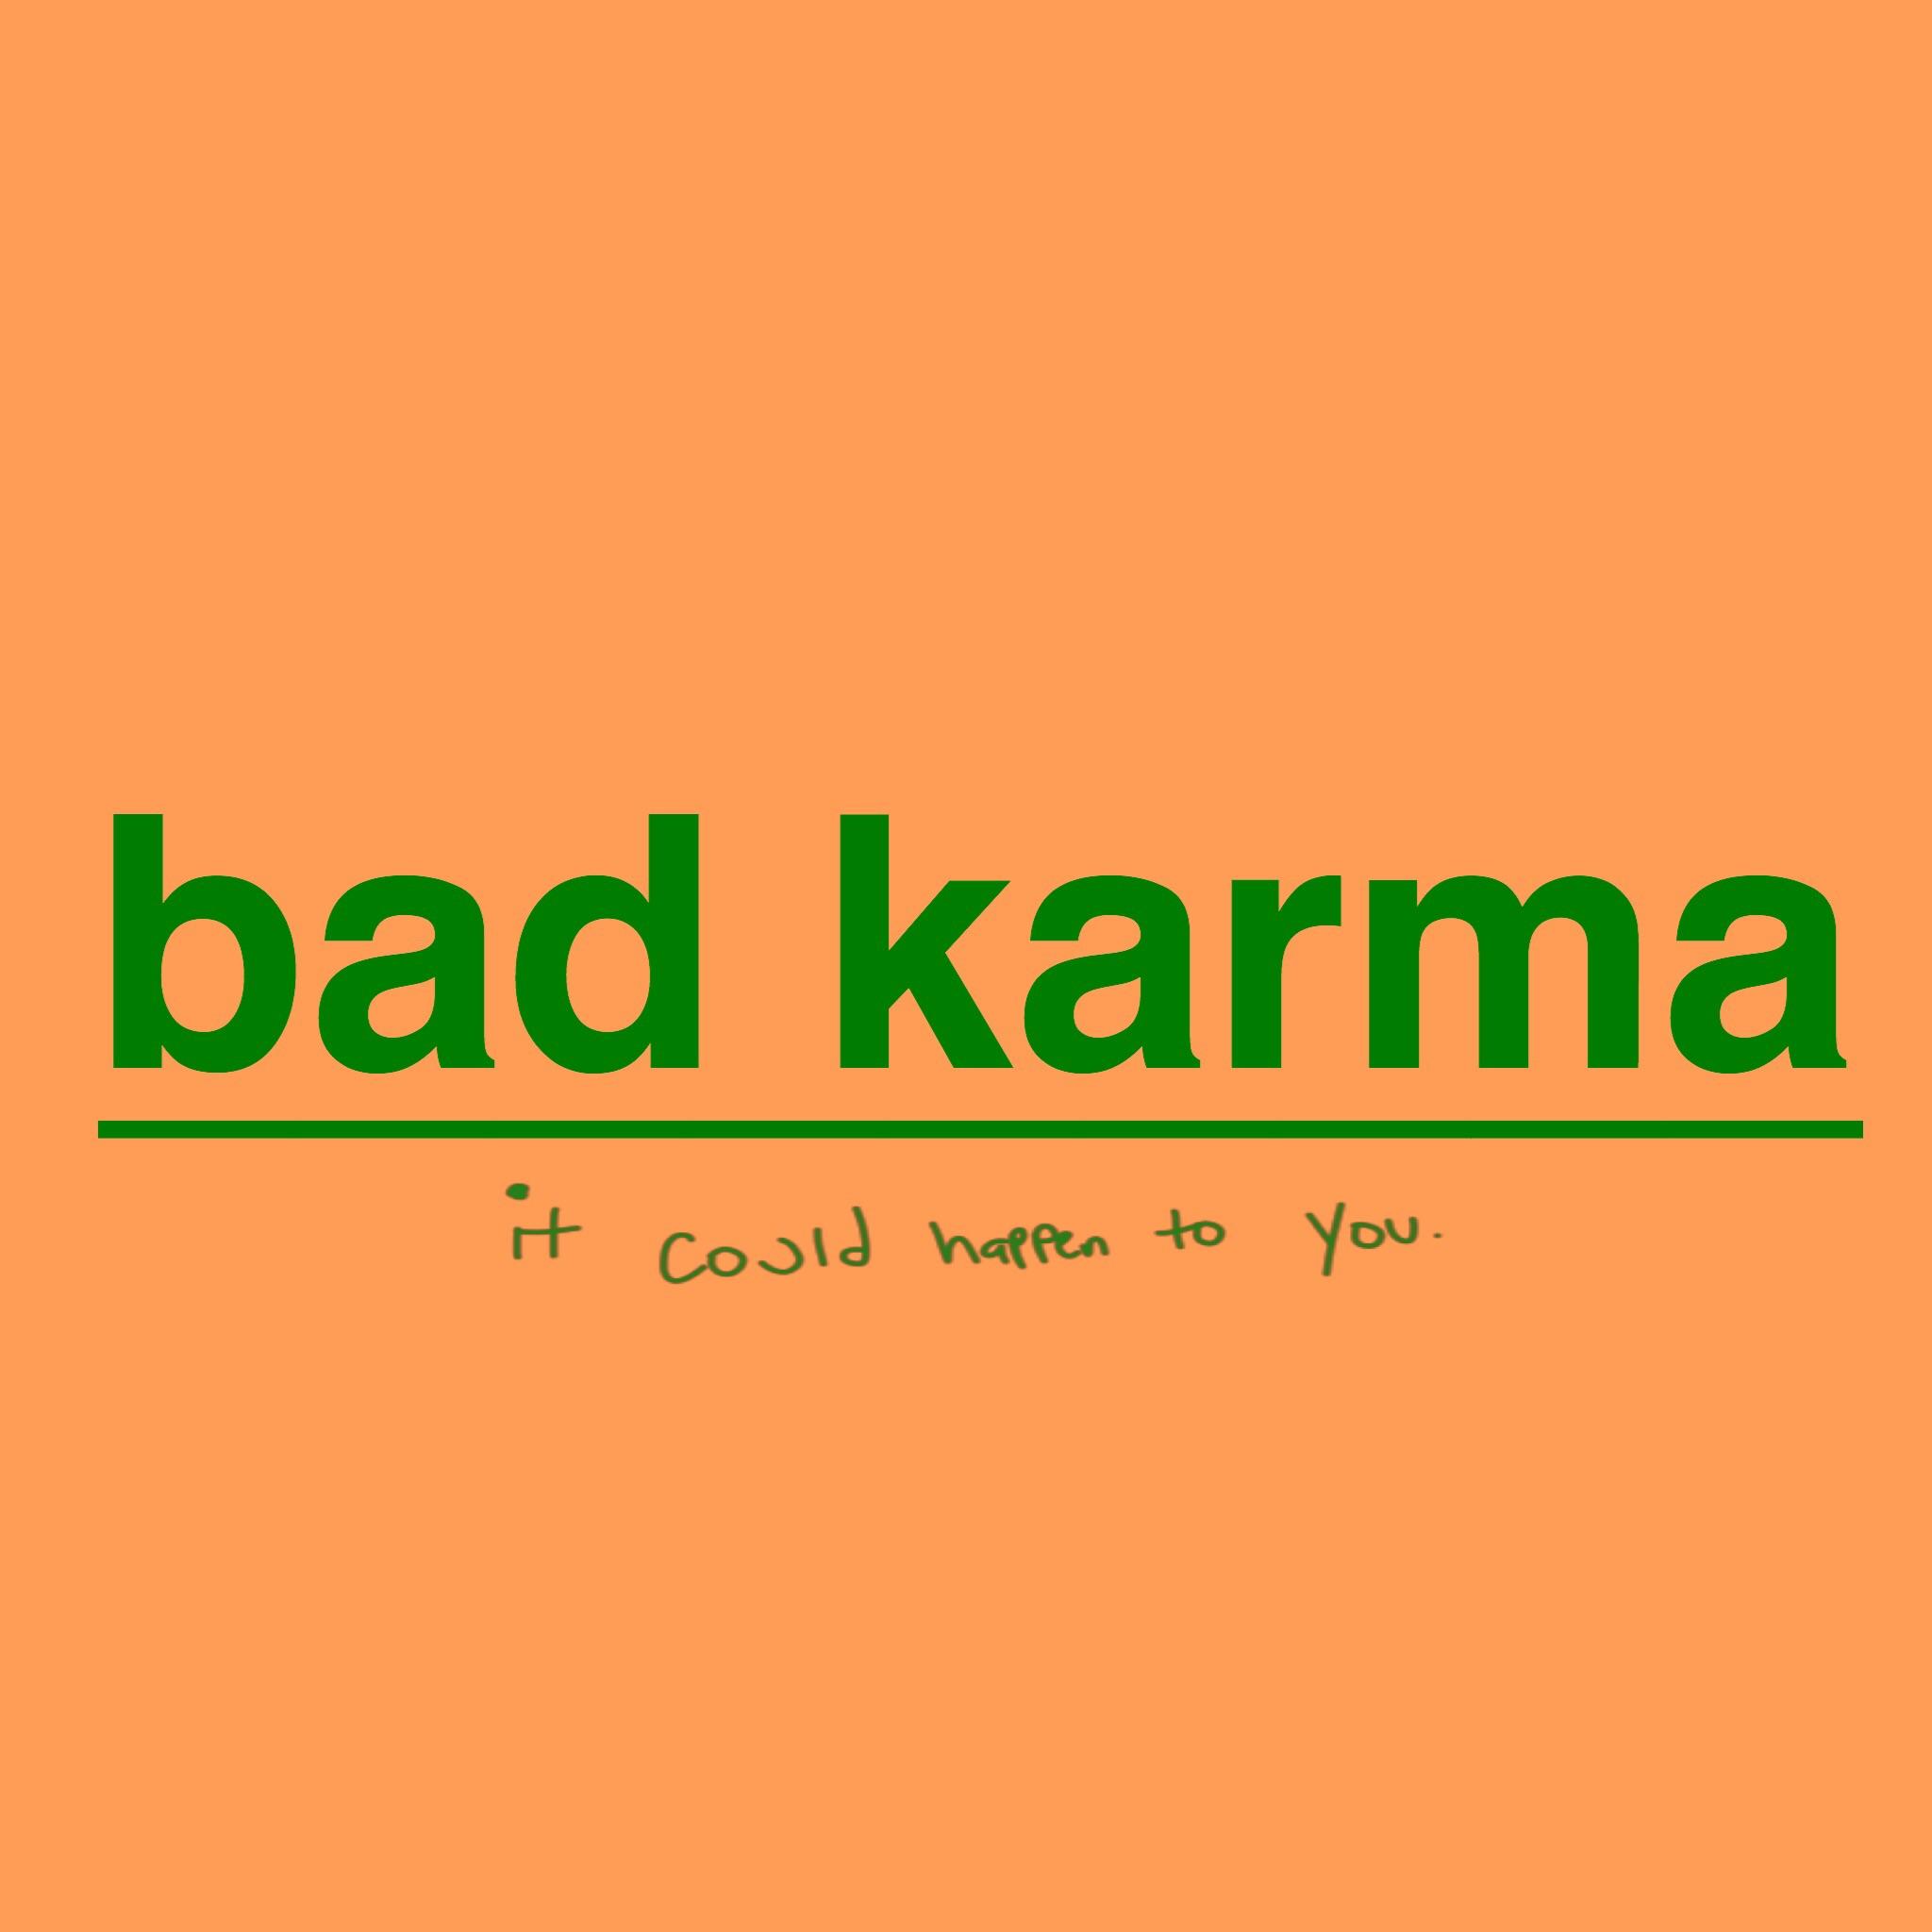 Bad Karma Logo - BH - bad karma : brockhampton